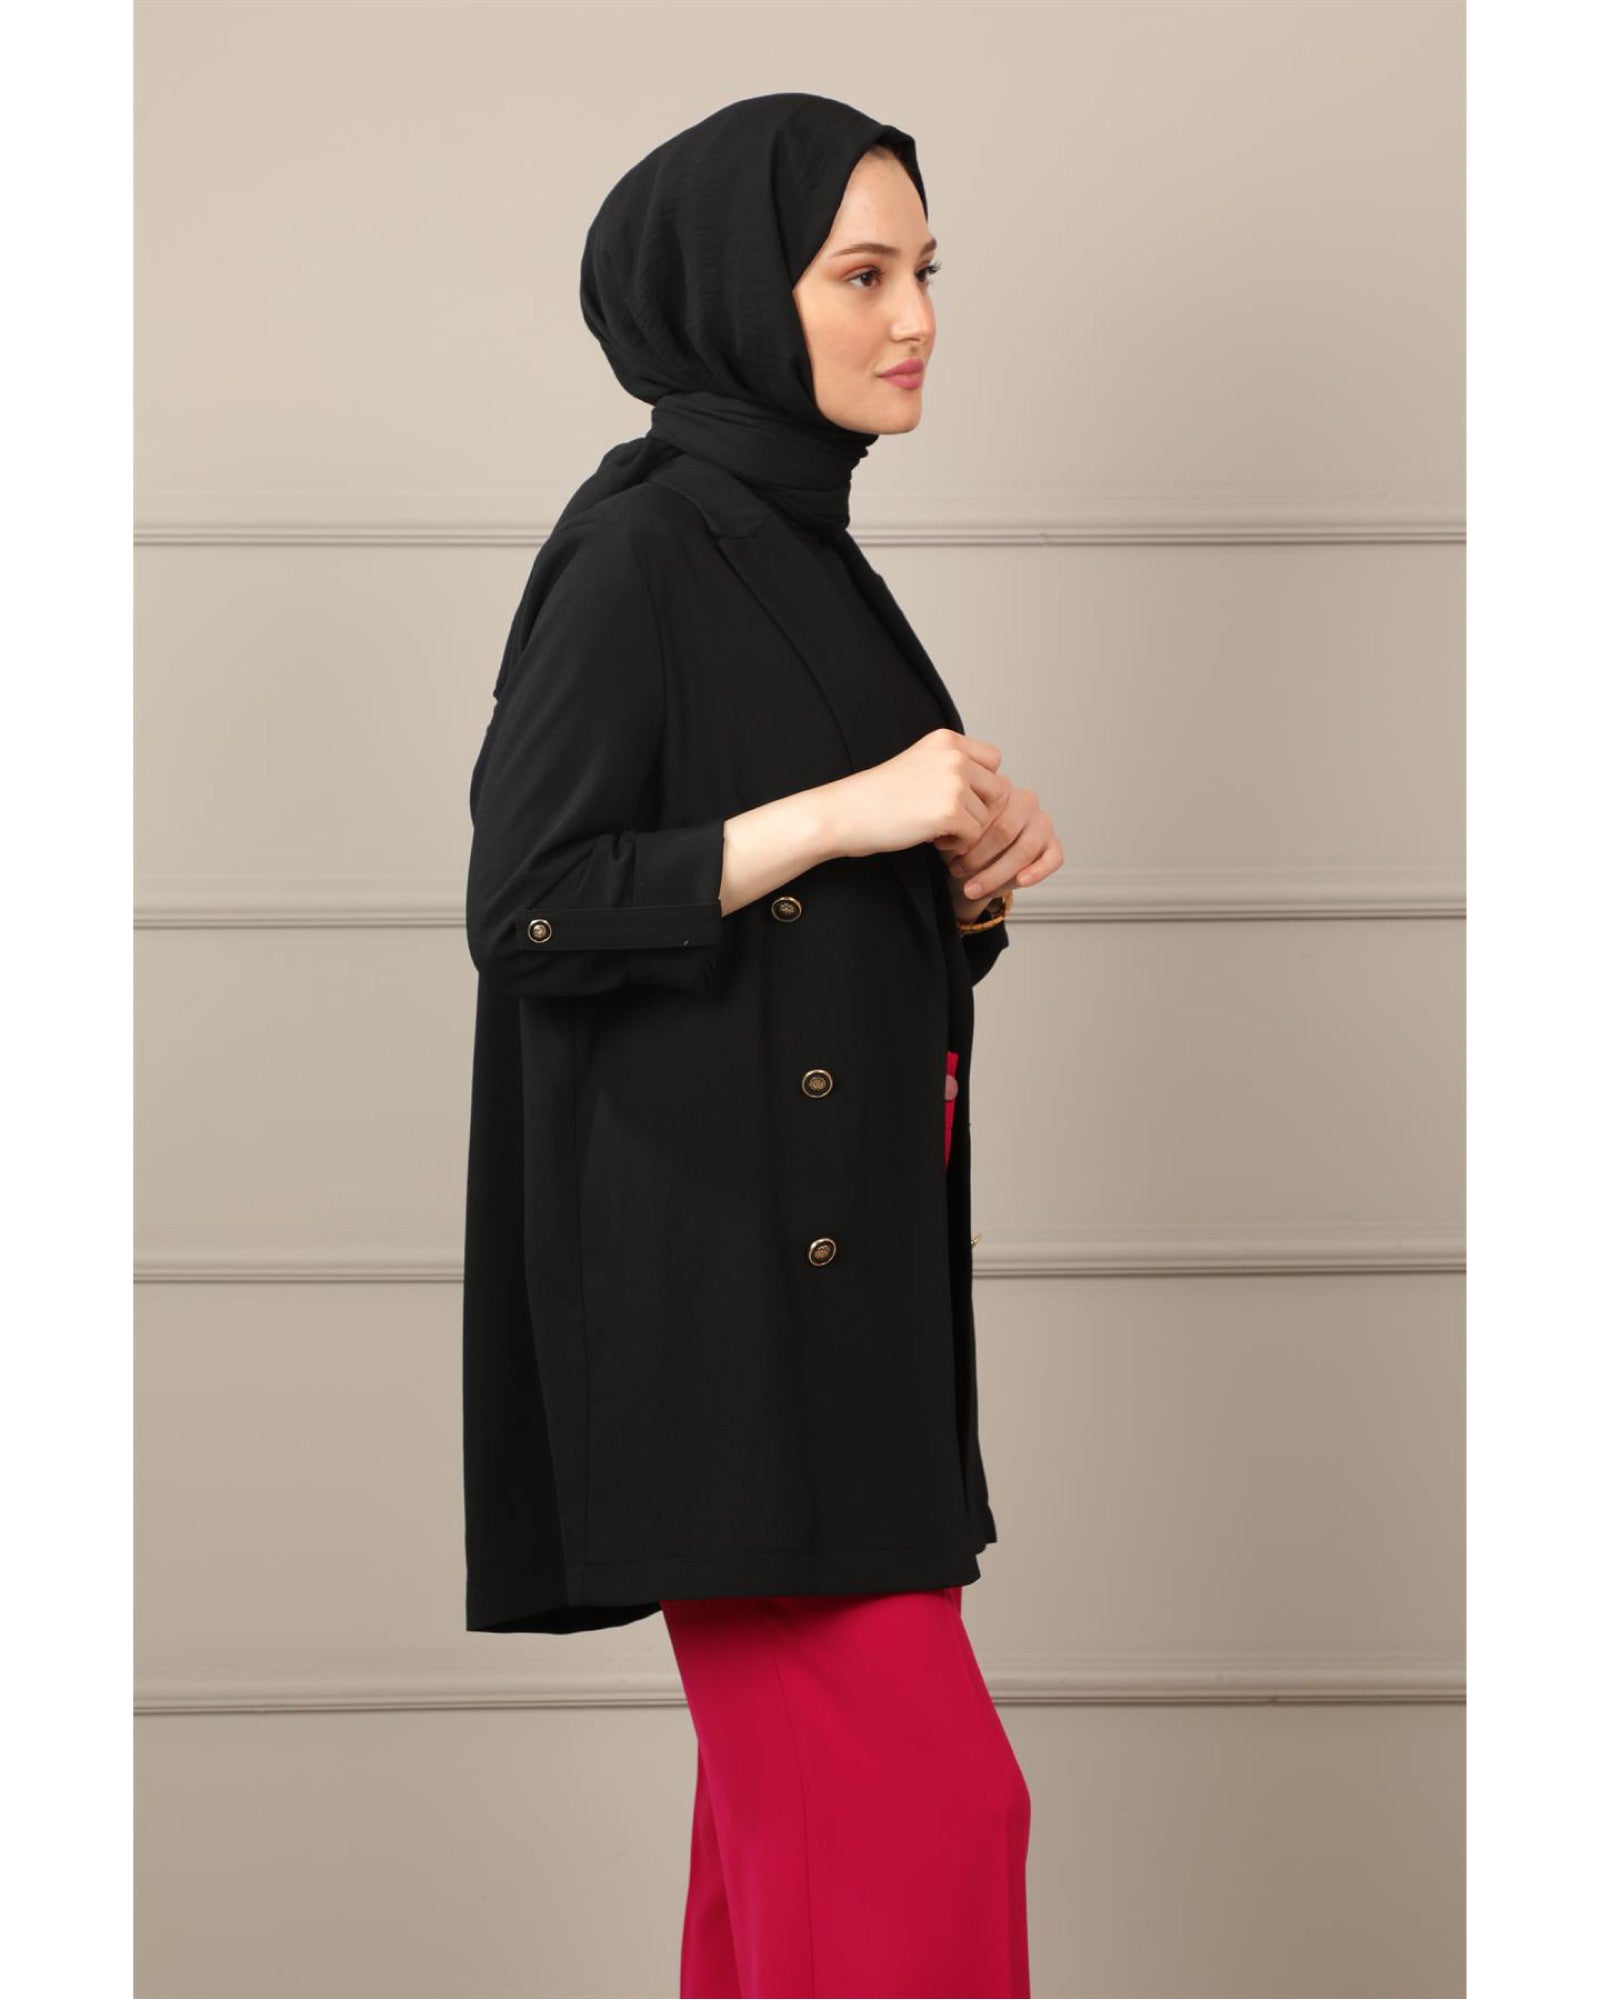 Hijab Zweireihige Blazer Jacke mit Knopfdetails